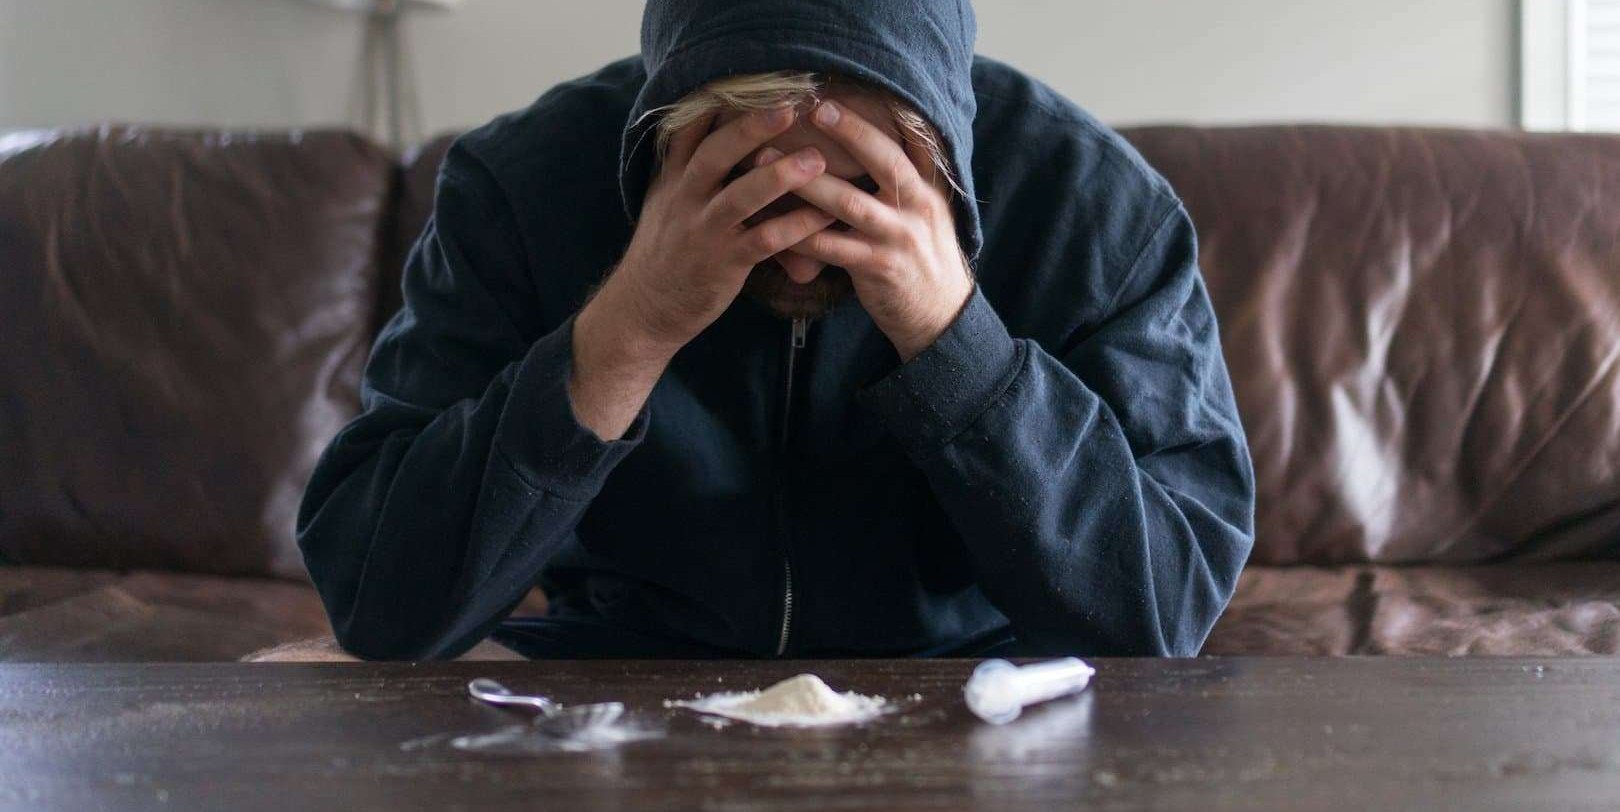 קוקאין: התמכרות והגמילה – תהליך ארוך ומאתגר, אך הוא אפשרי